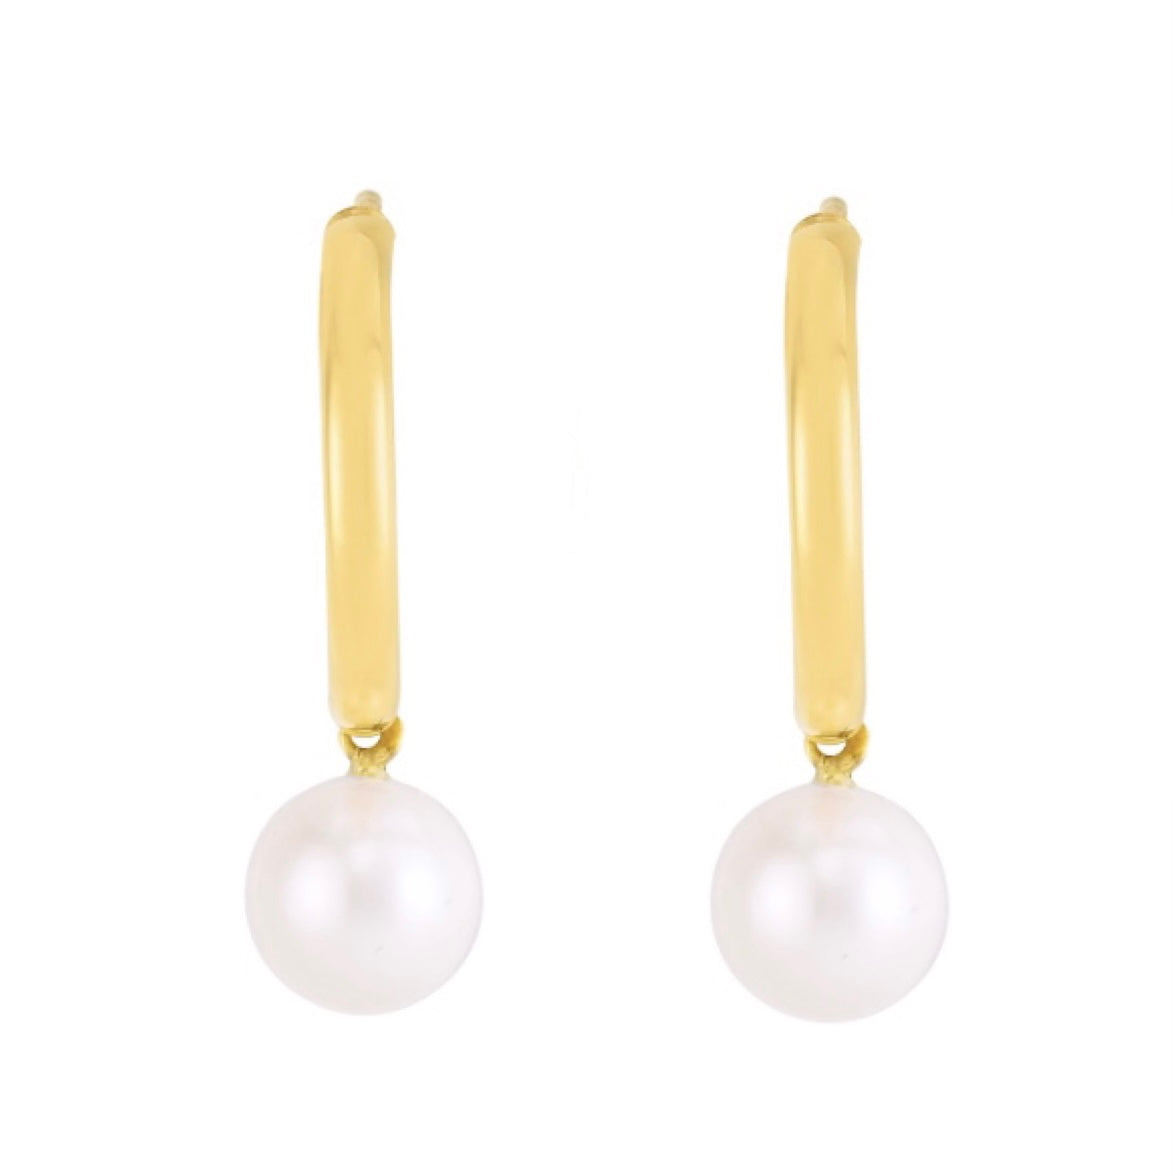 Half Hoop Pearl Earrings | Modern Elegance & Timeless Pearls | by Pearly Girls